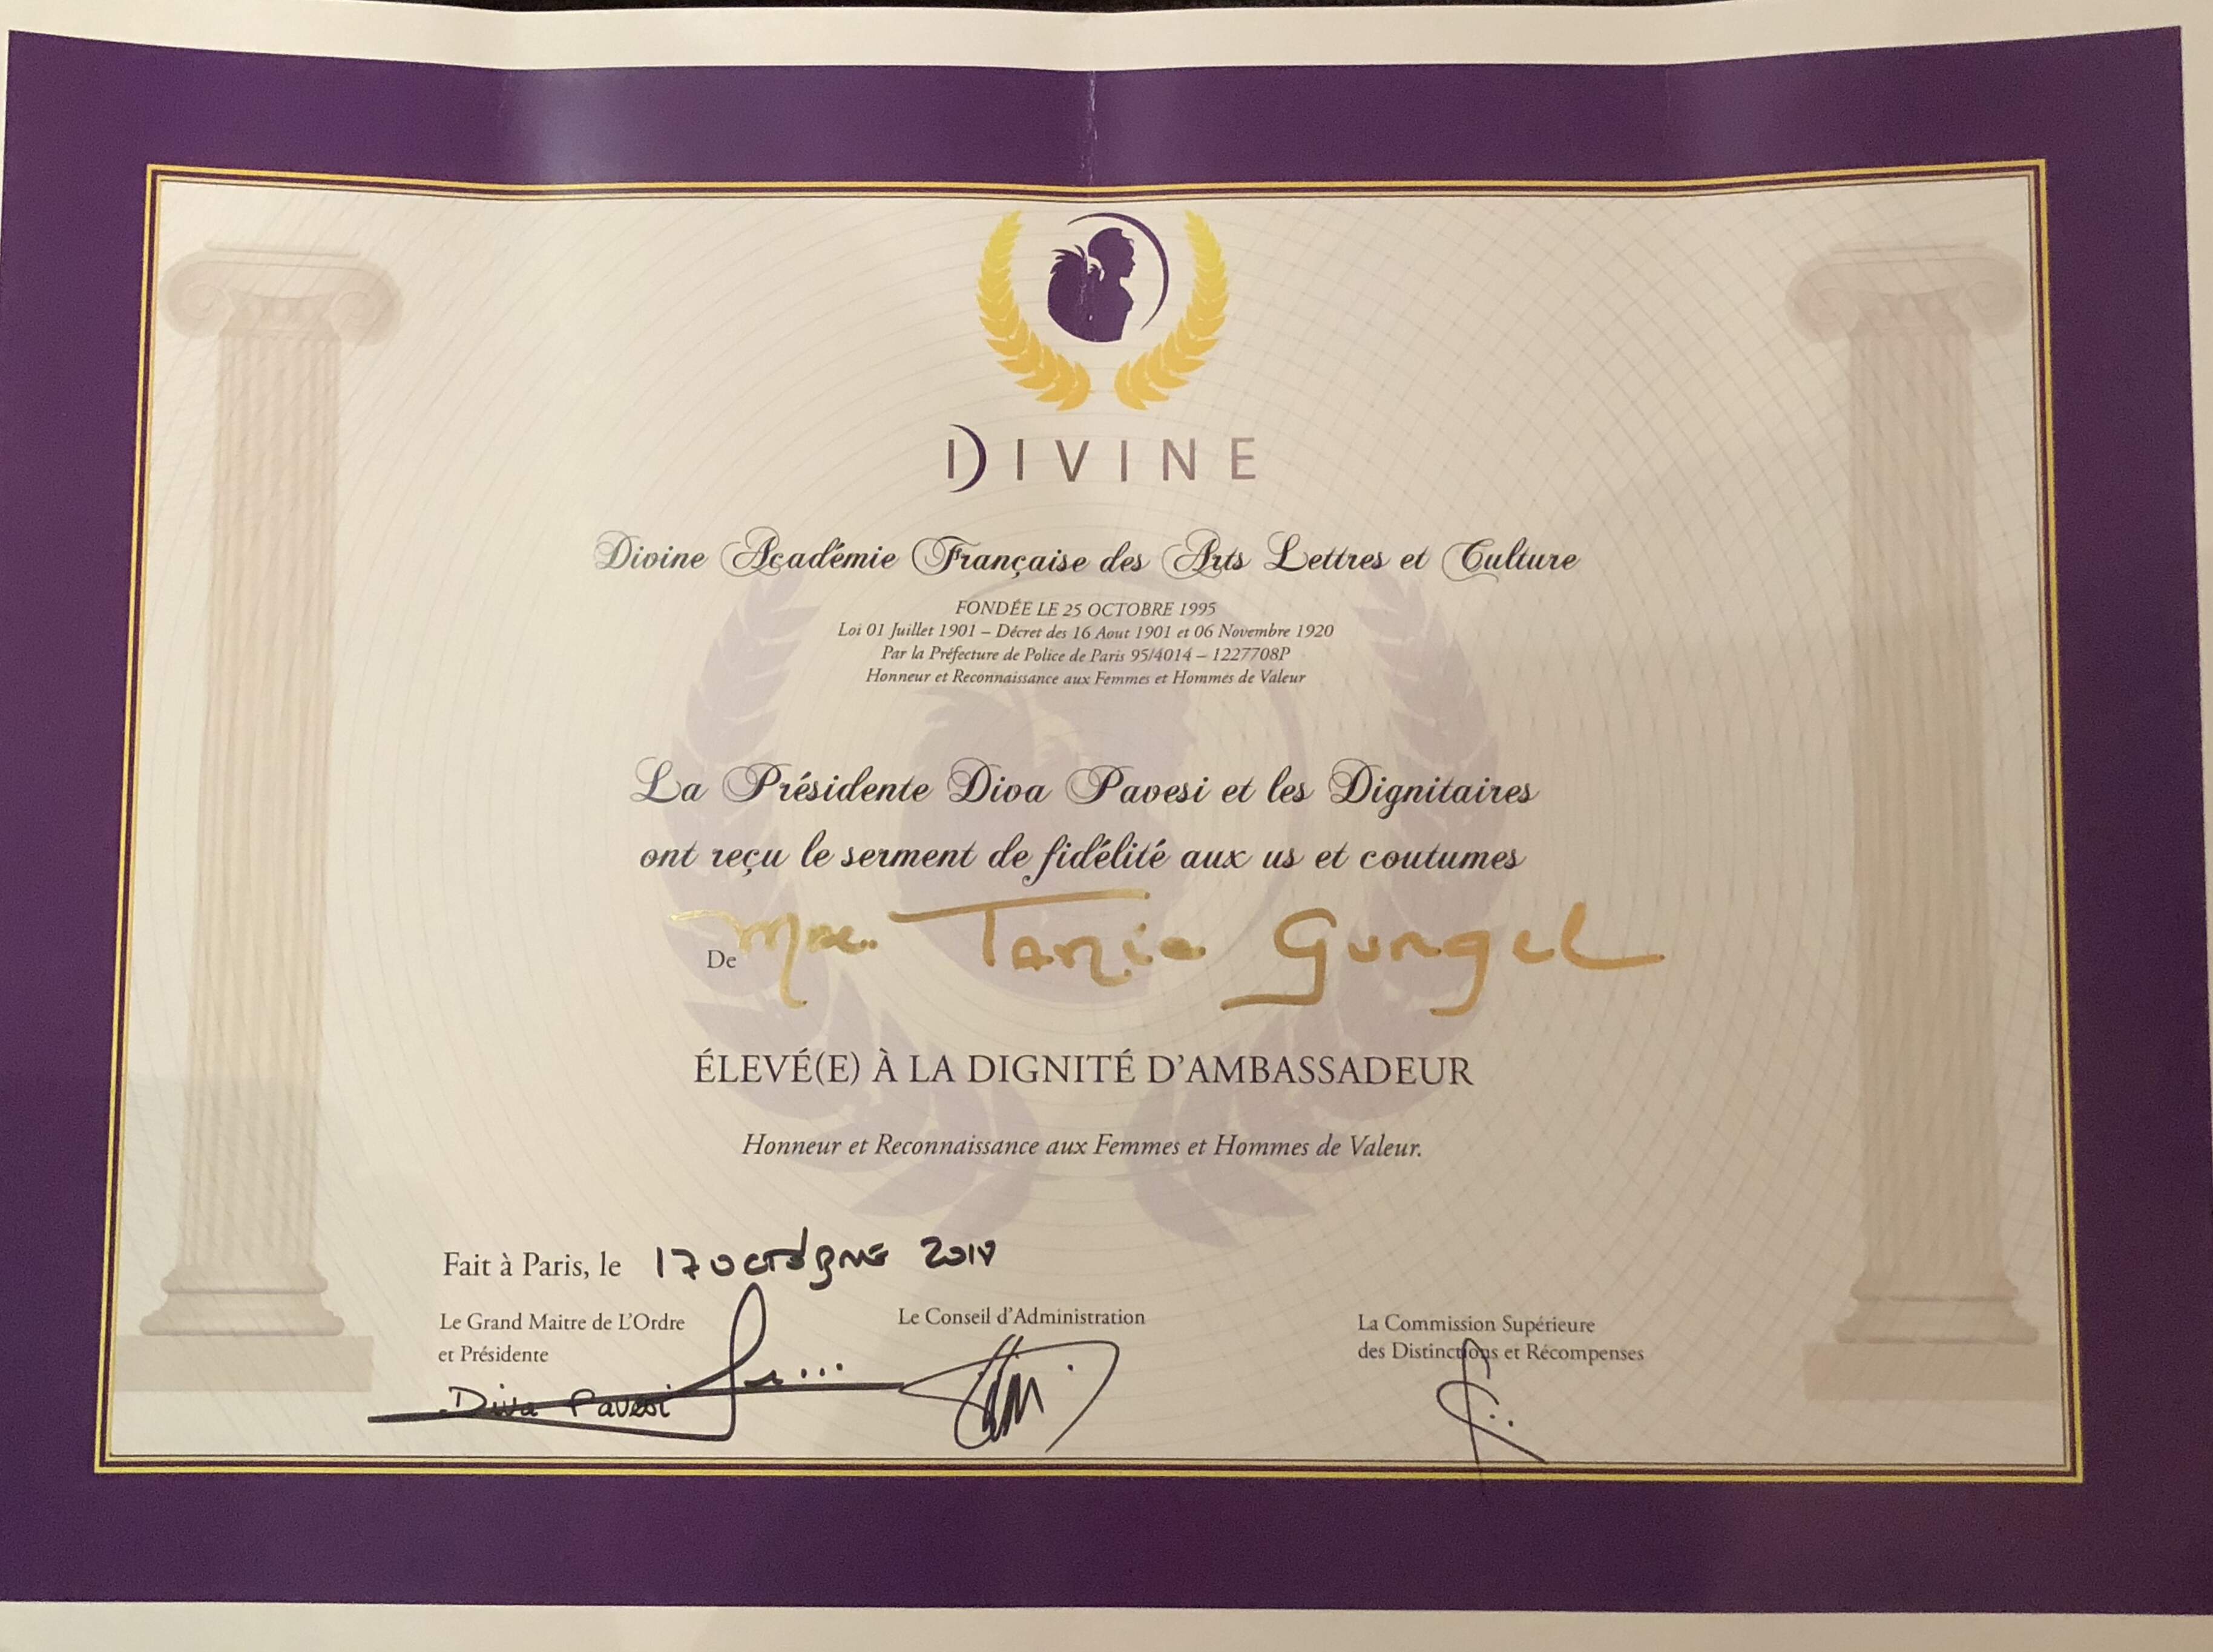 Condecoração De Embaixadora Pela Divine Académie Française Des Arts Lettres Et Culture